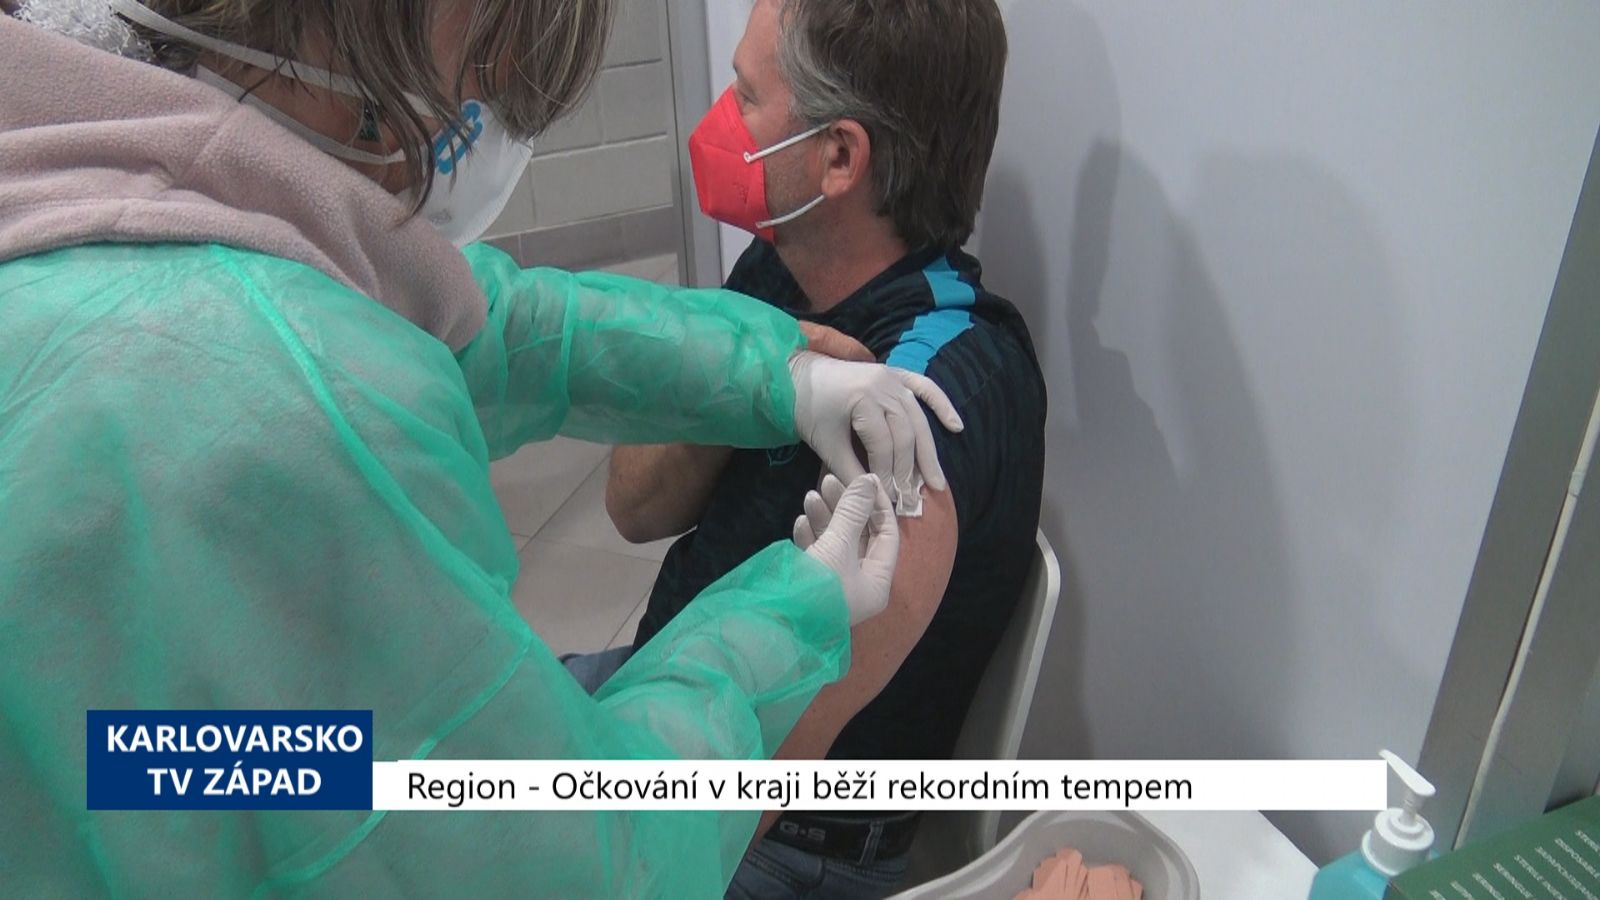 Region: Očkování v kraji běží rekordním tempem (TV Západ)